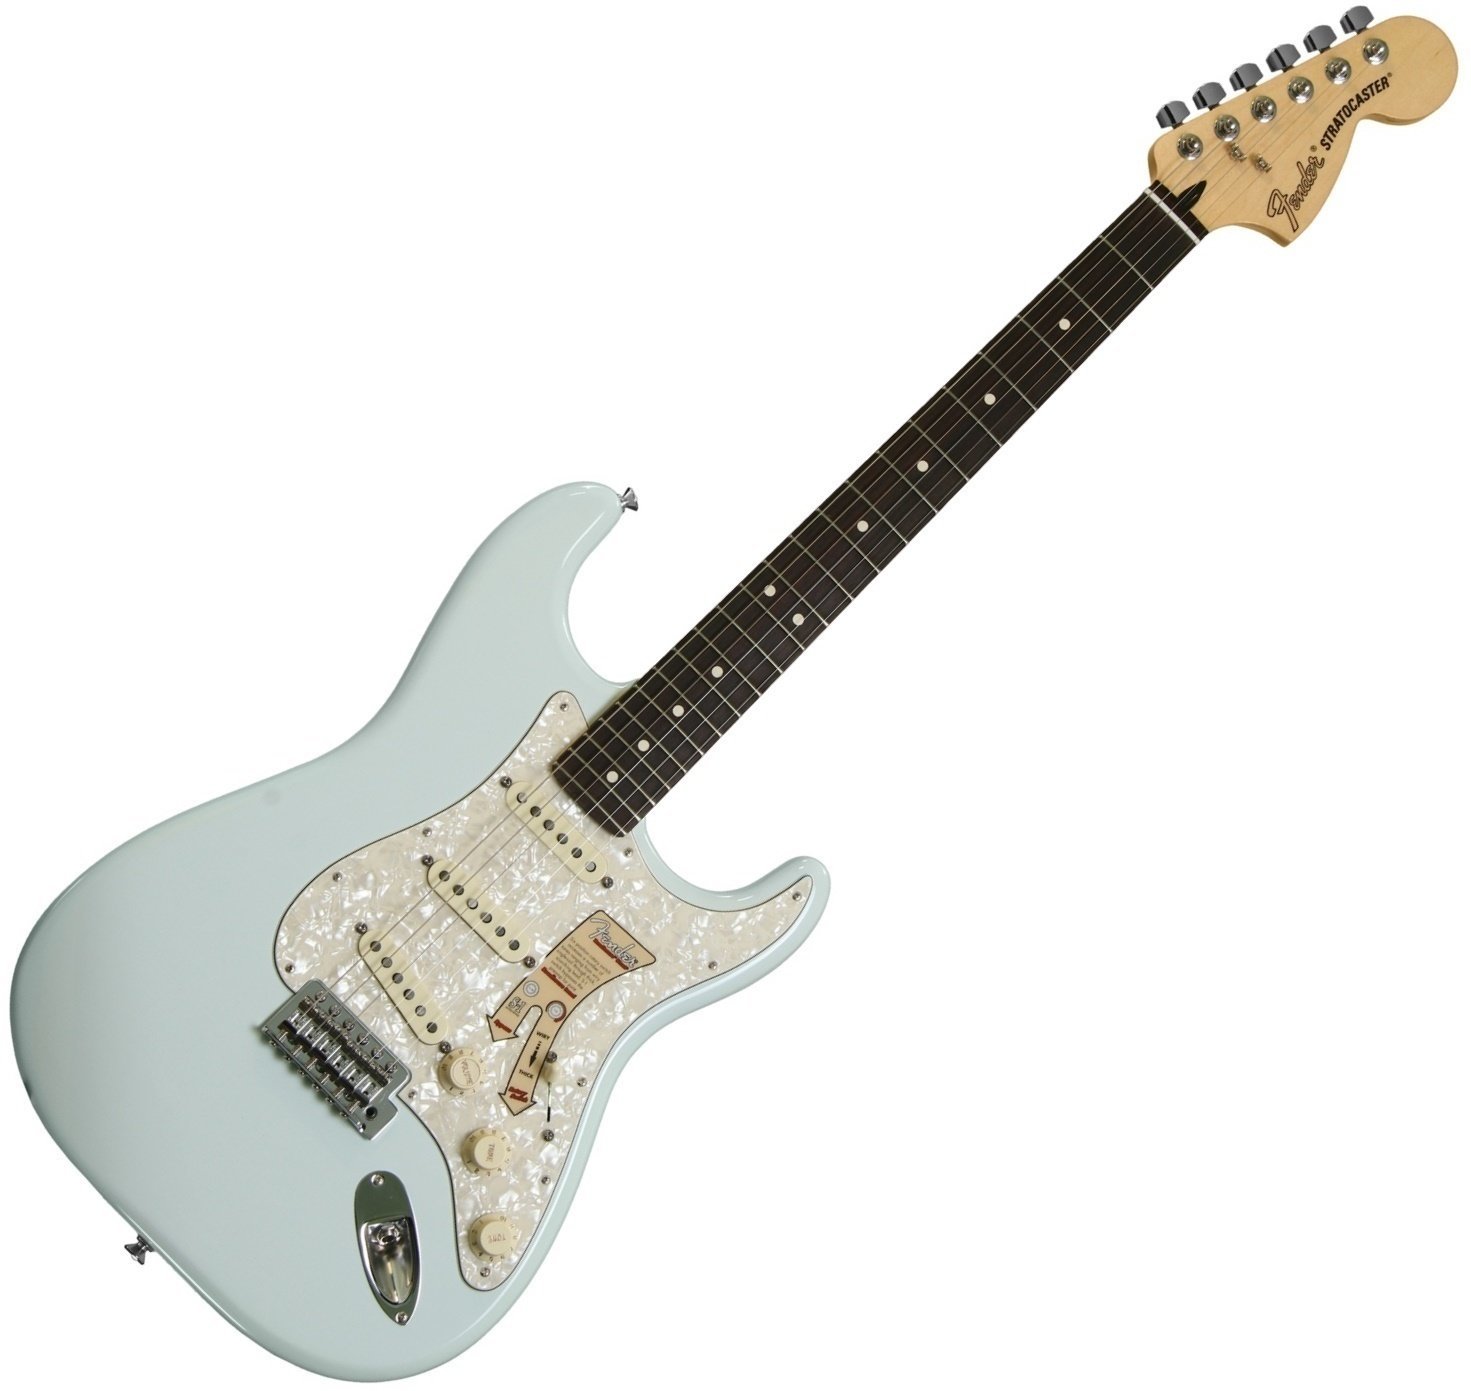 Ηλεκτρική Κιθάρα Fender Deluxe Roadhouse Stratocaster Rosewood Fingerboard, Sonic Blue